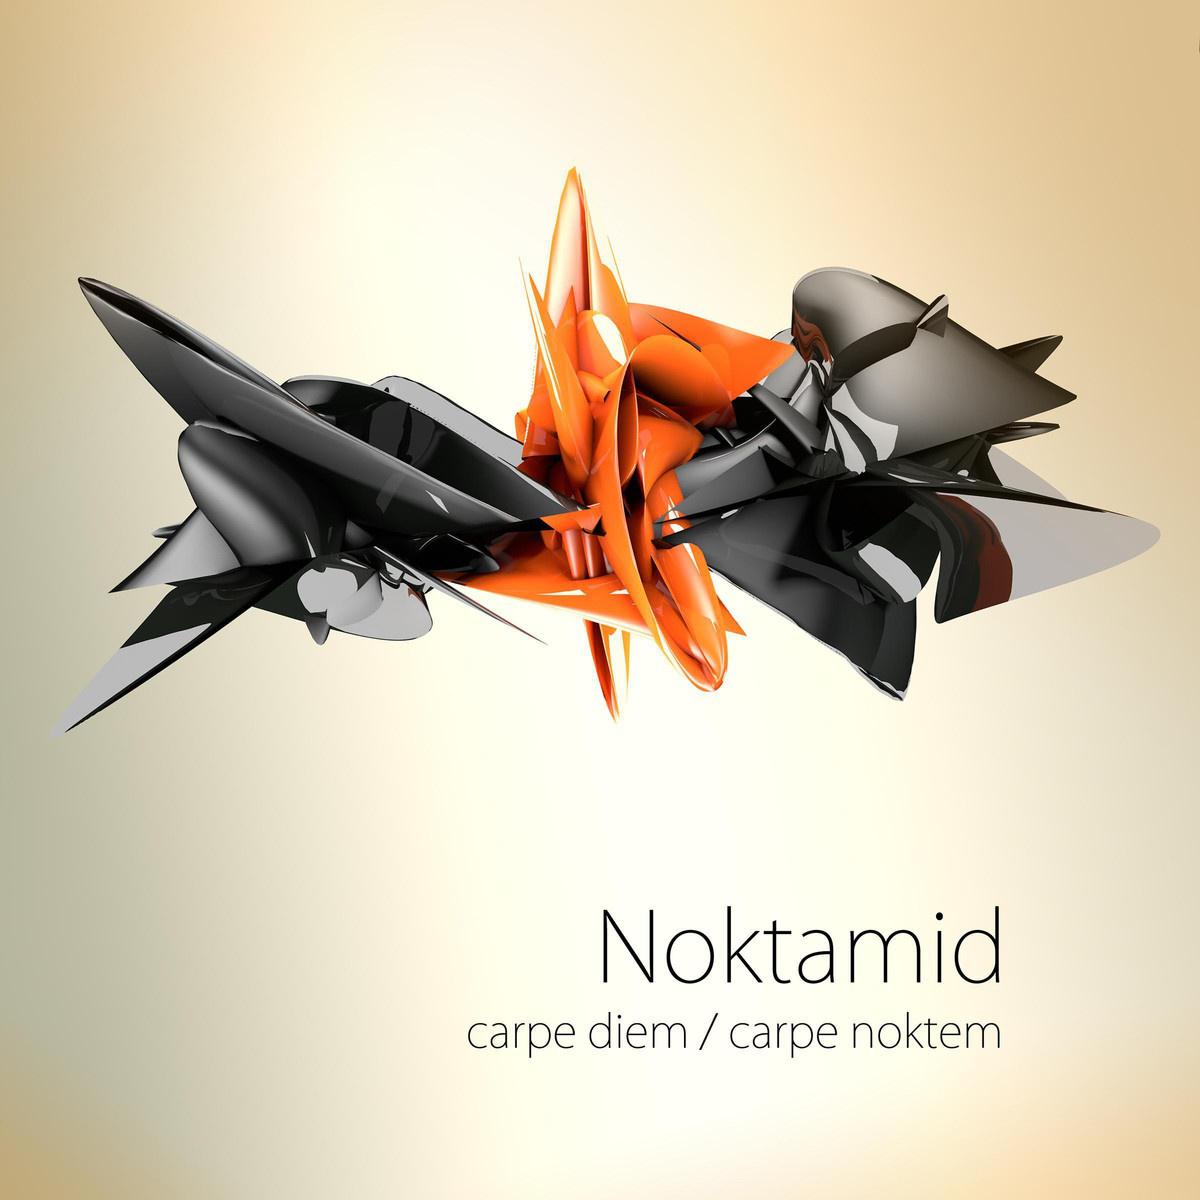 Noktamid - Too Many Questions